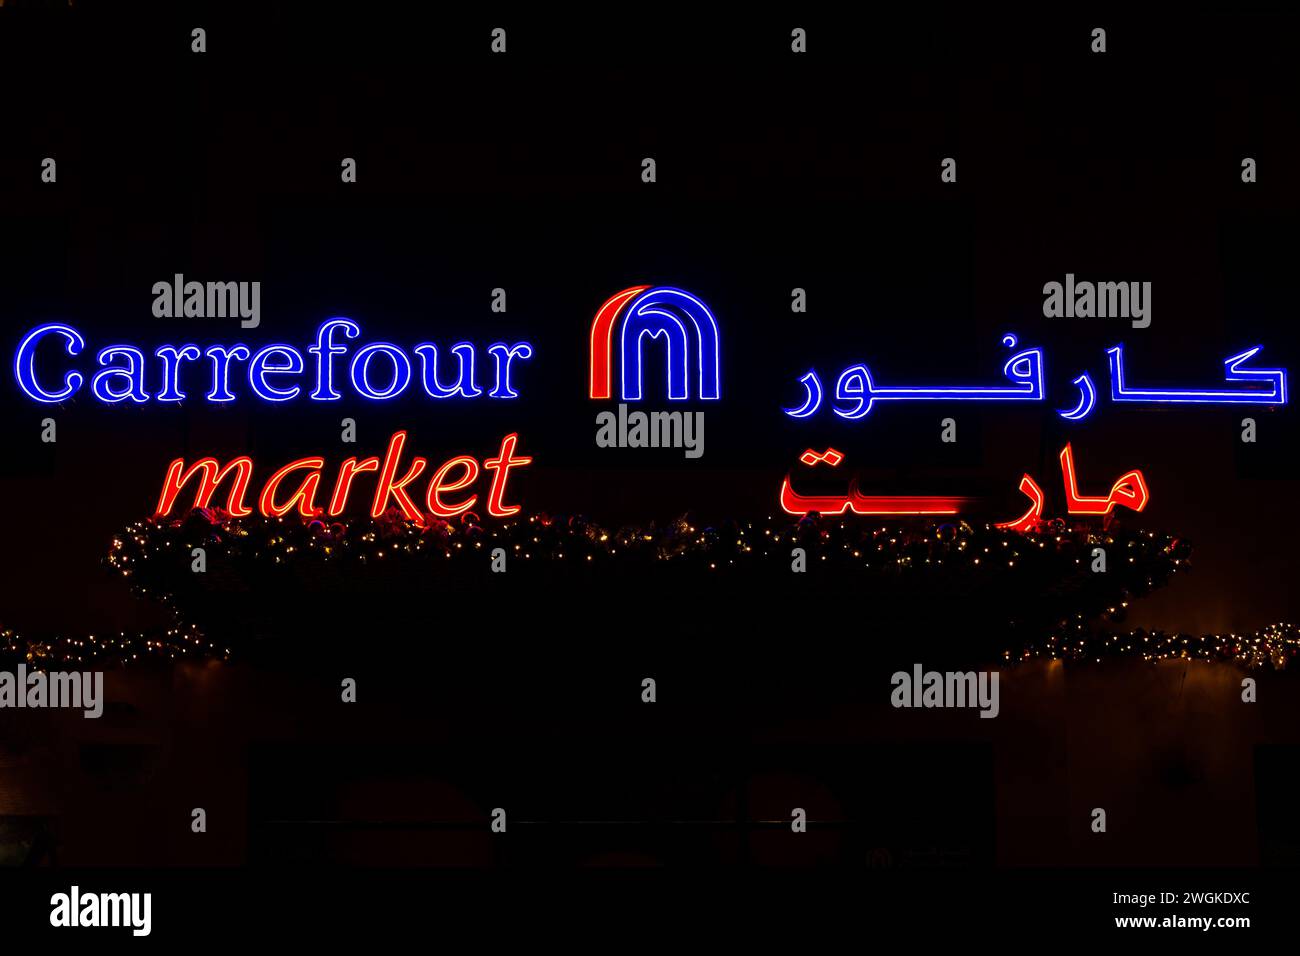 Dubai, UAE, 10.10.21. Carrefour market illuminated logo with Arabic brand name and Christmas lights decorations against black background, Dubai, UAE Stock Photo